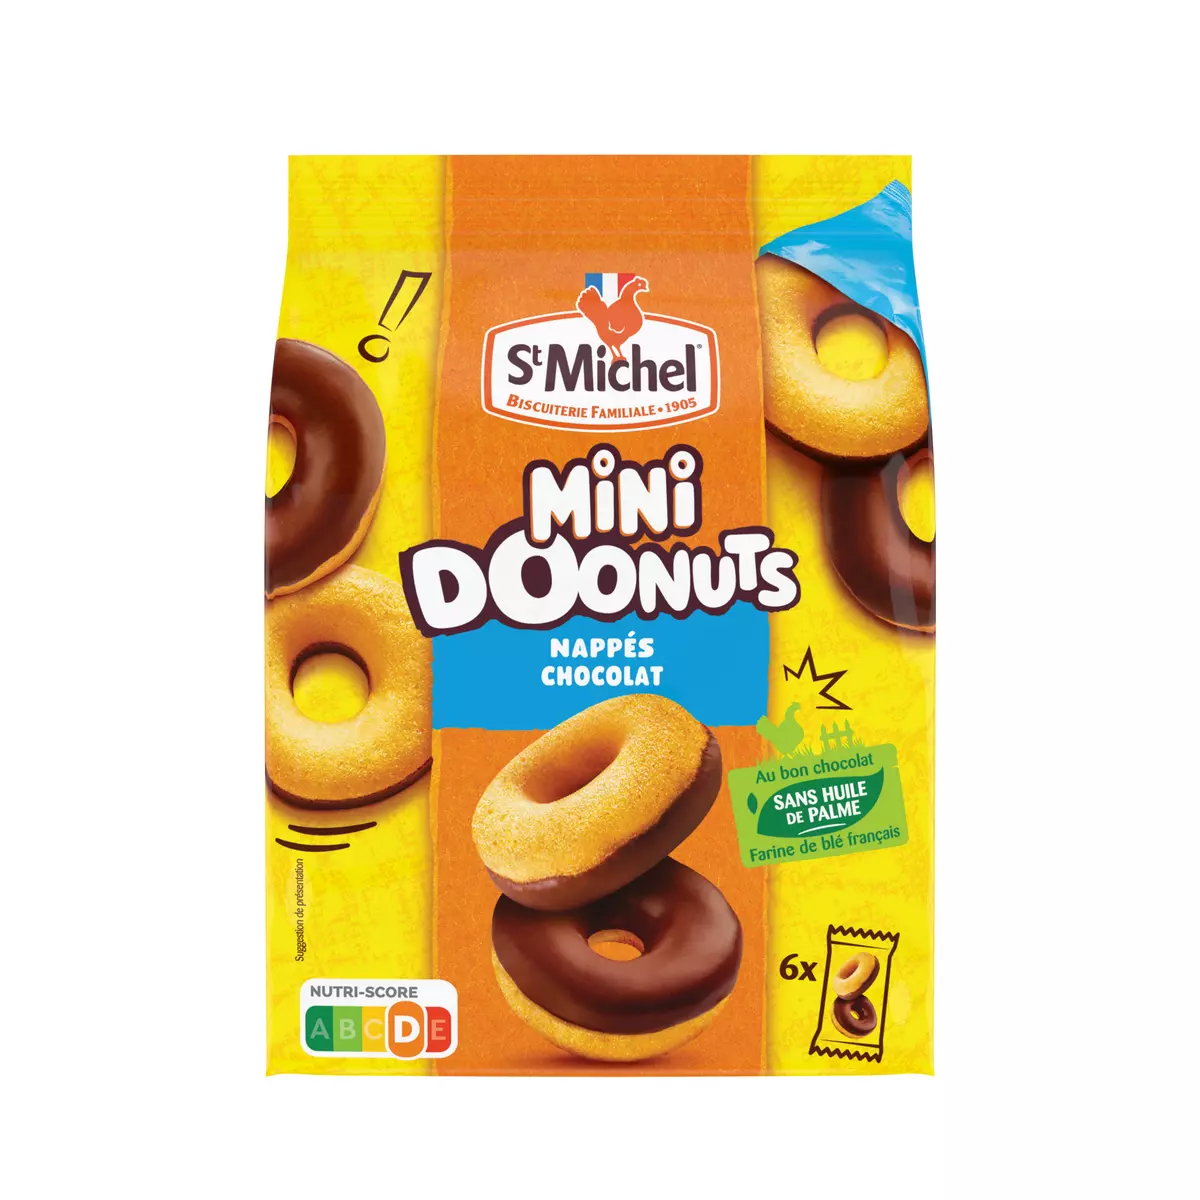 ST MICHEL Mini Doonuts nappés au chocolat sans huile de palme sachets fraîcheurs 6x2 pièces 180g